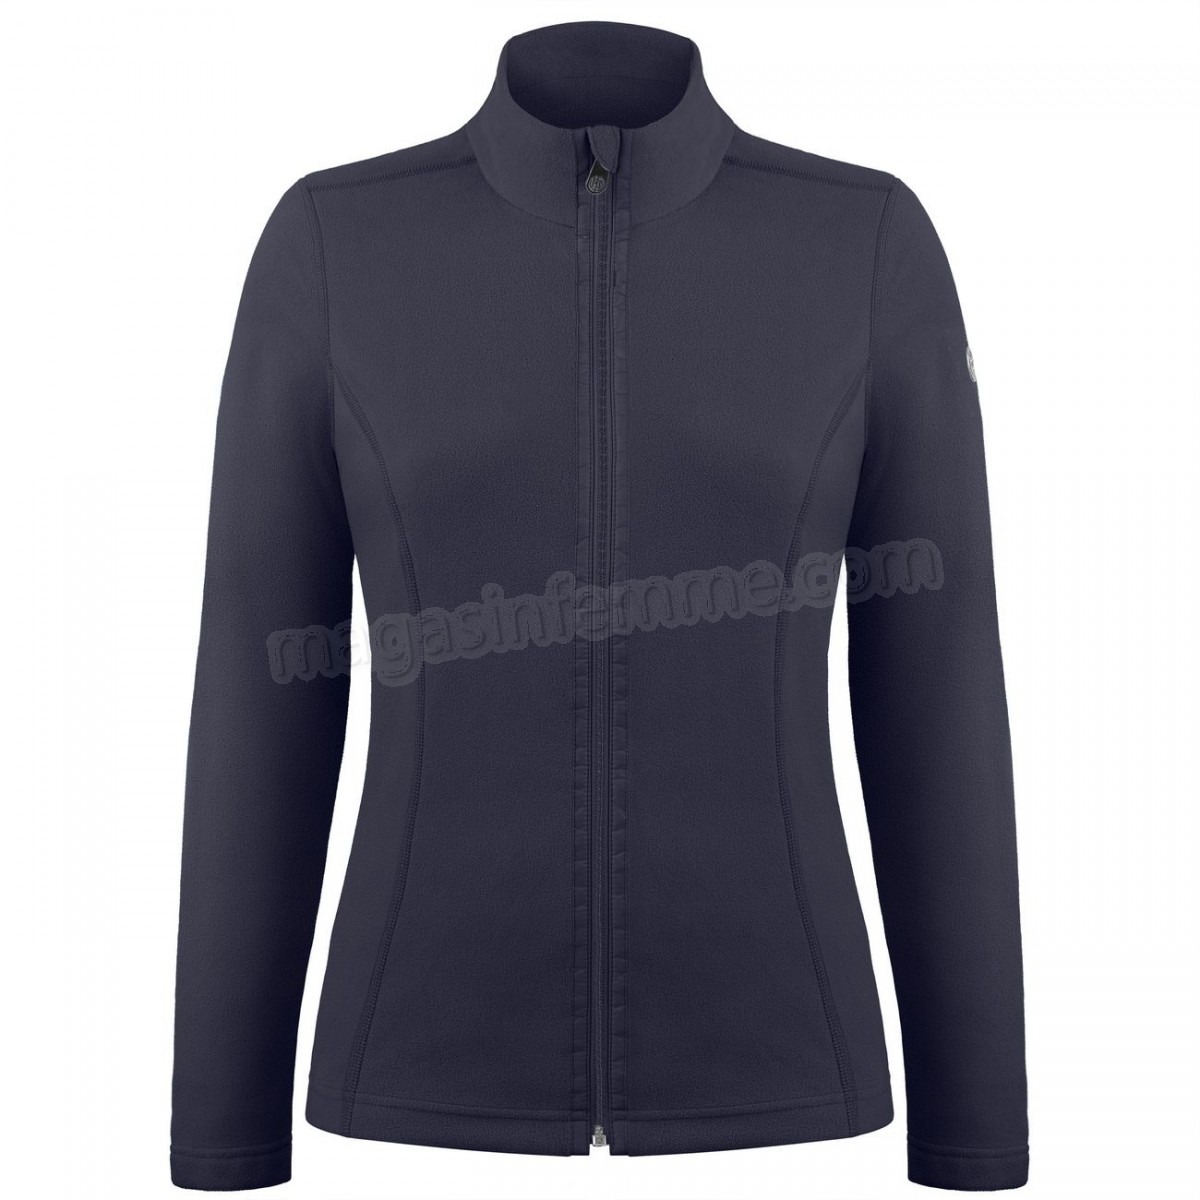 Poivre Blanc-Sports d'hiver femme POIVRE BLANC Veste Polaire Poivre Blanc Fleece Jacket 1500 Gothic Blue 4 Femme en solde - -0